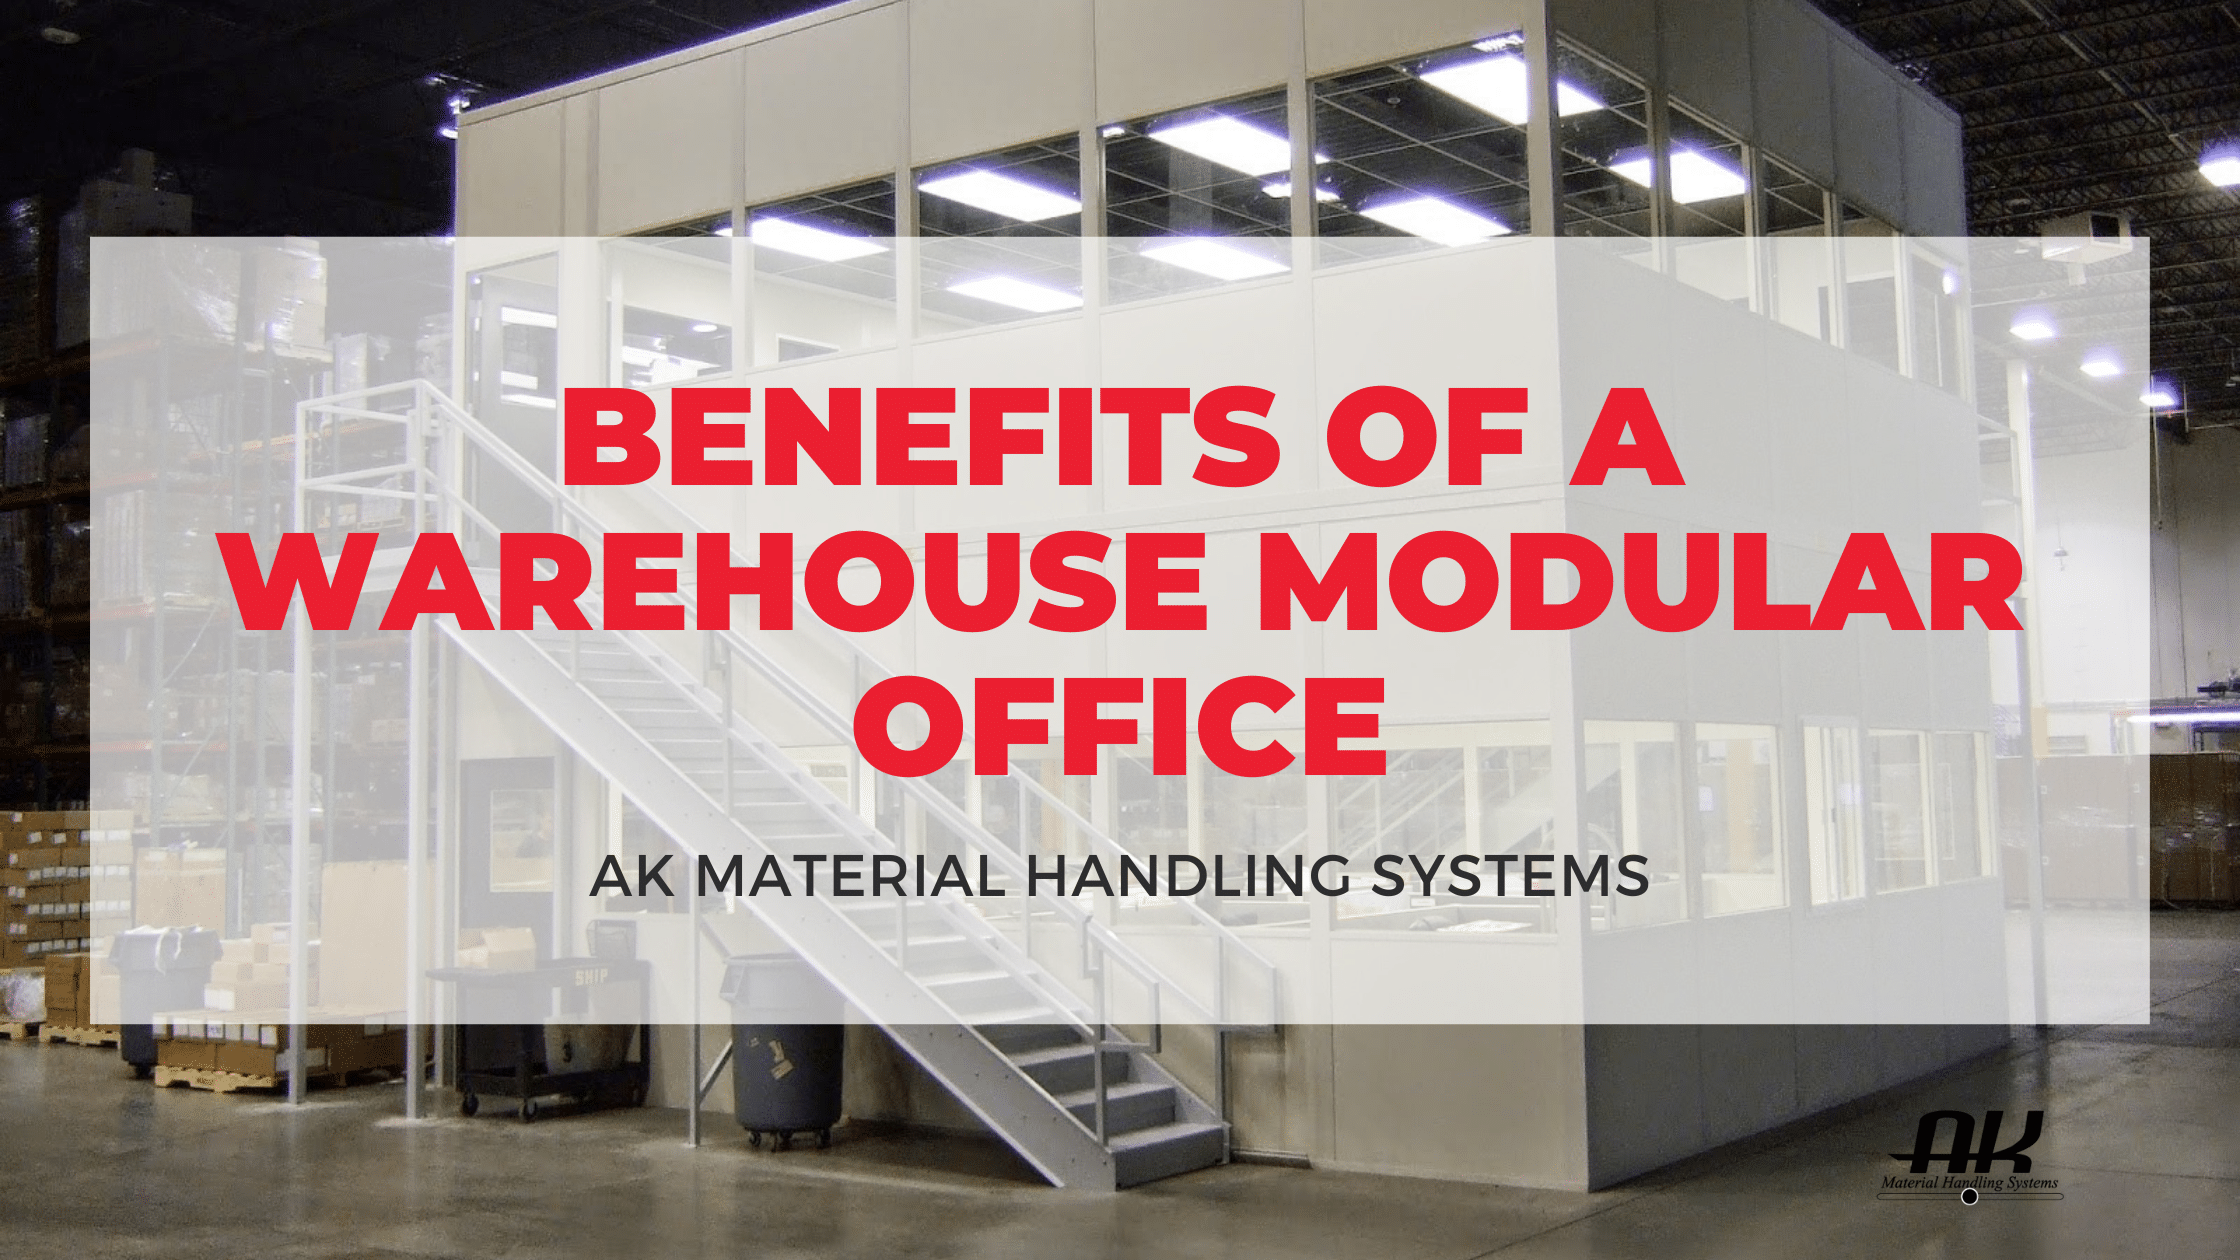 Benefits of a warehouse modular office.